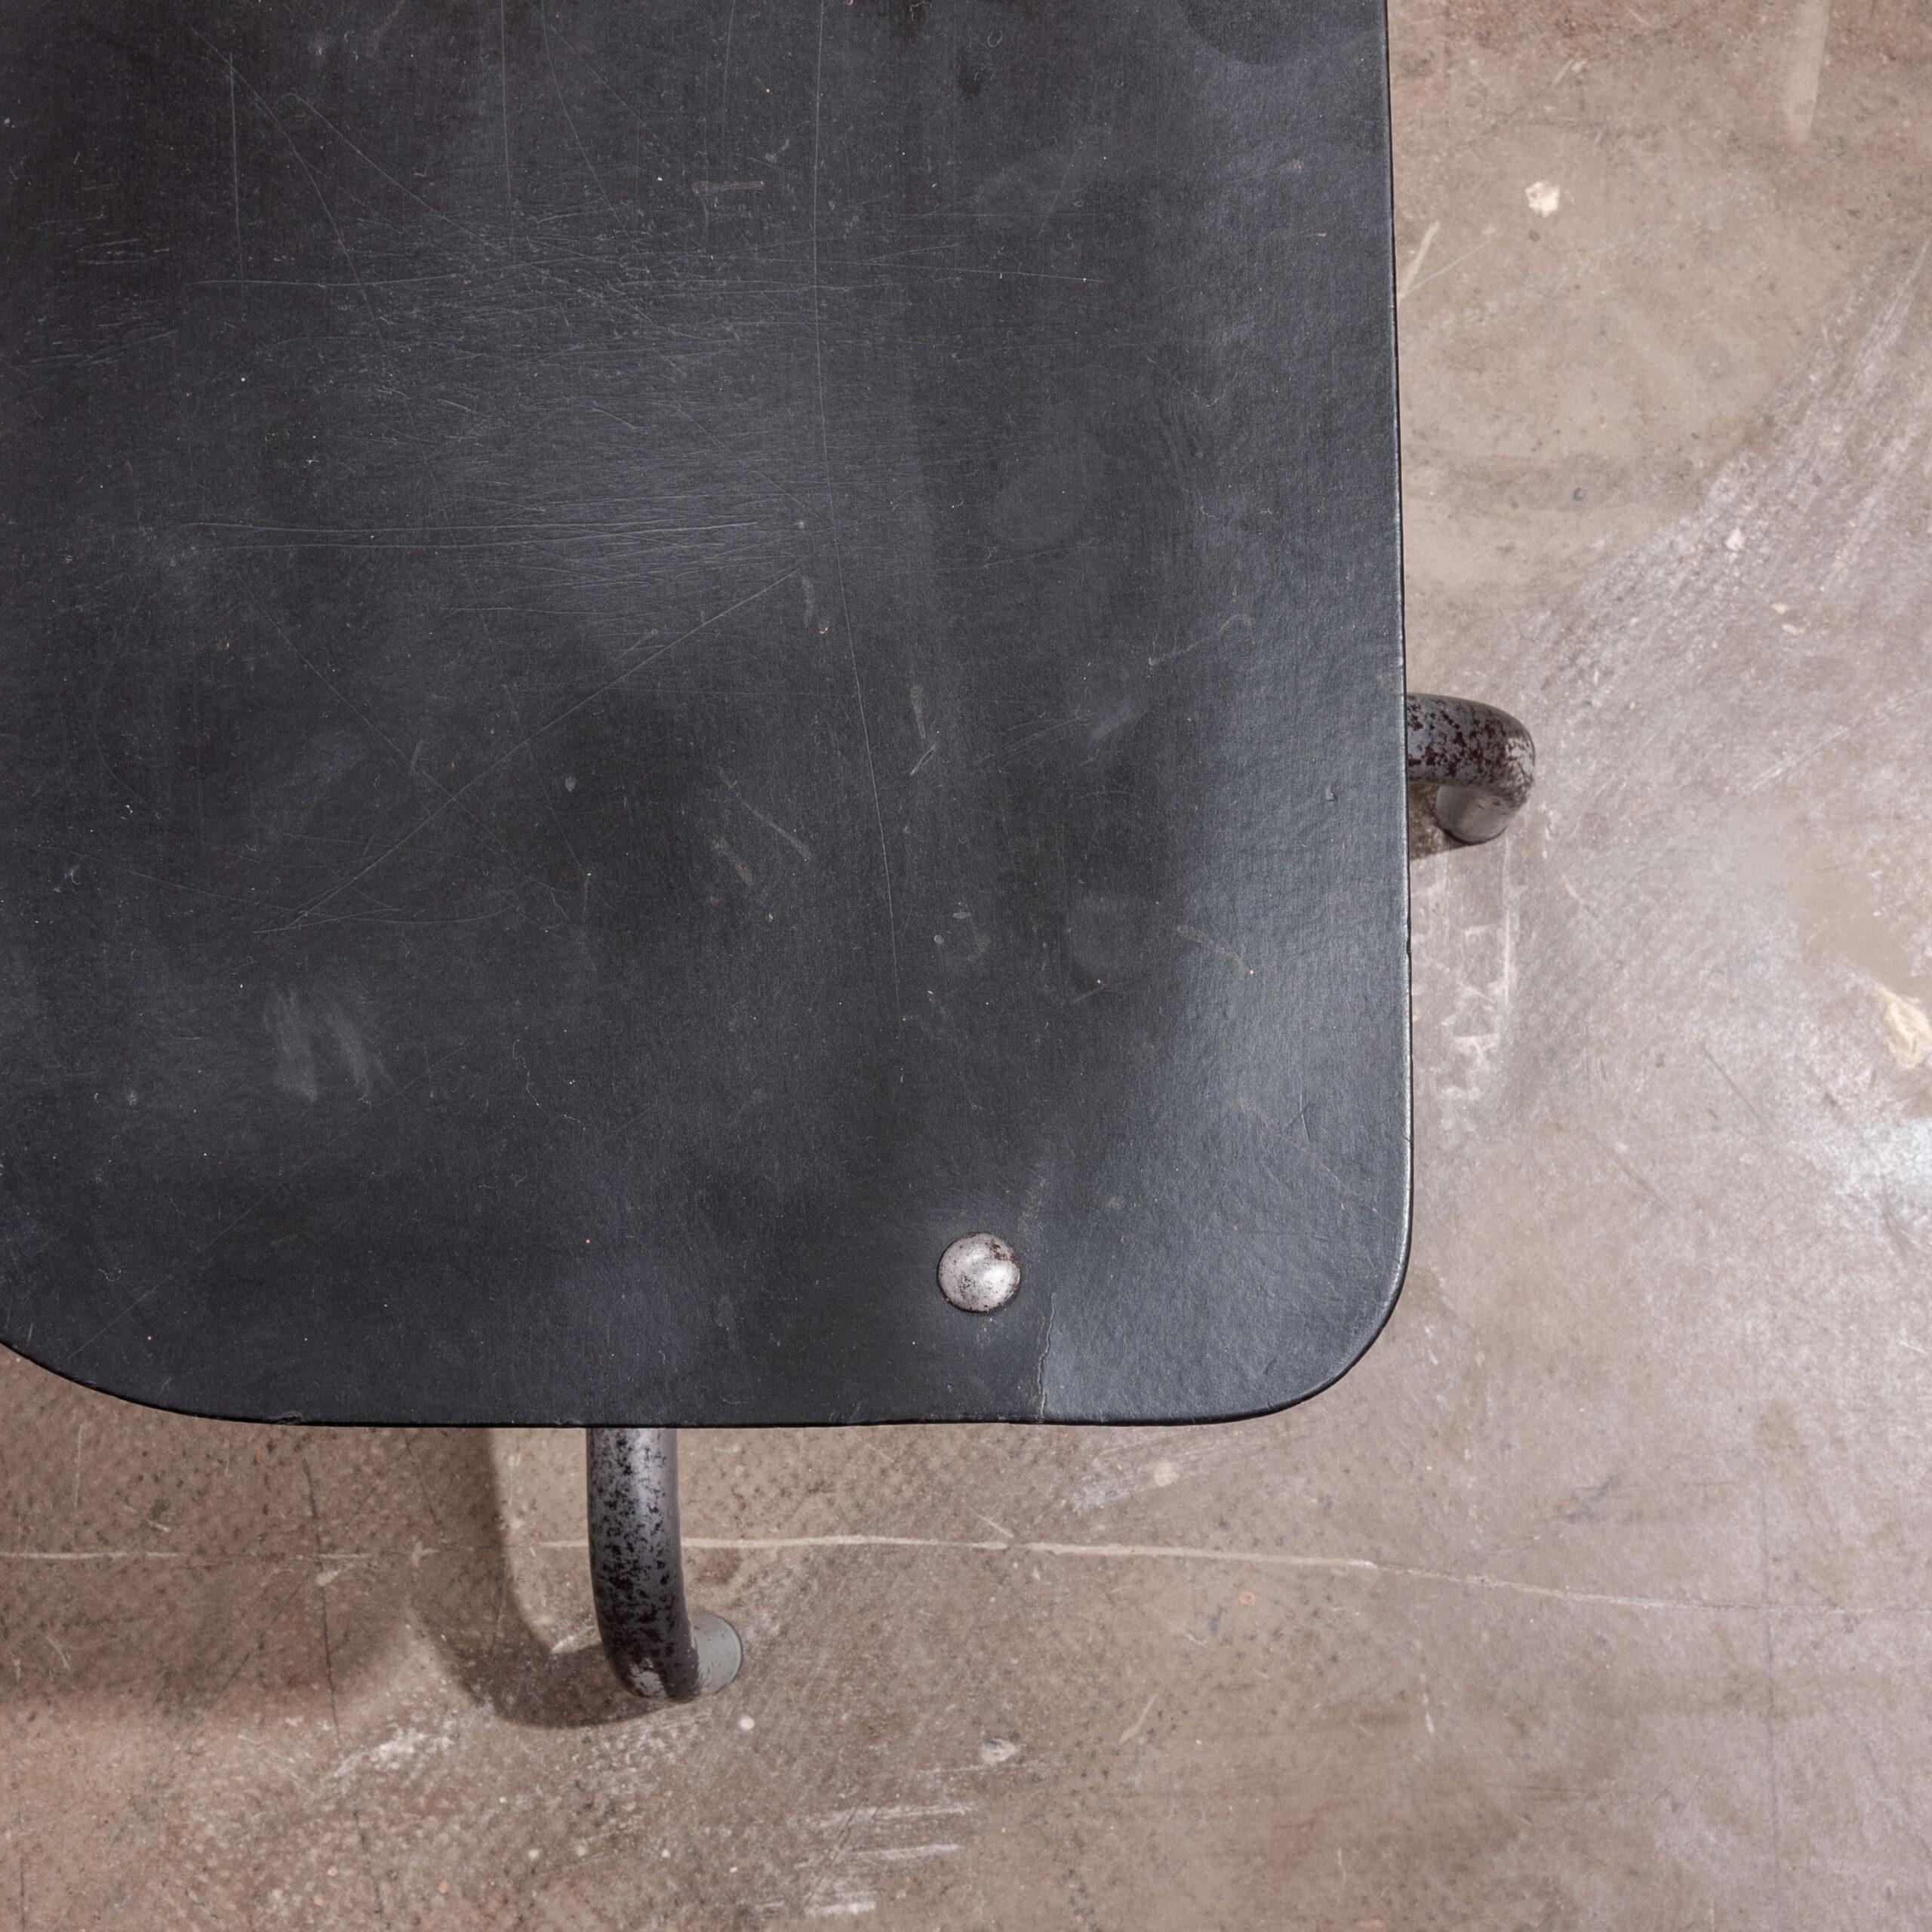 Chaise de machiniste originale Tan-Sad des années 1940
Chaise de machiniste Tan-Sad originale des années 1940 - pivotante et réglable en hauteur. L'une de nos passions est l'héritage des marques industrielles britanniques (et autres) et Tan-Sad est